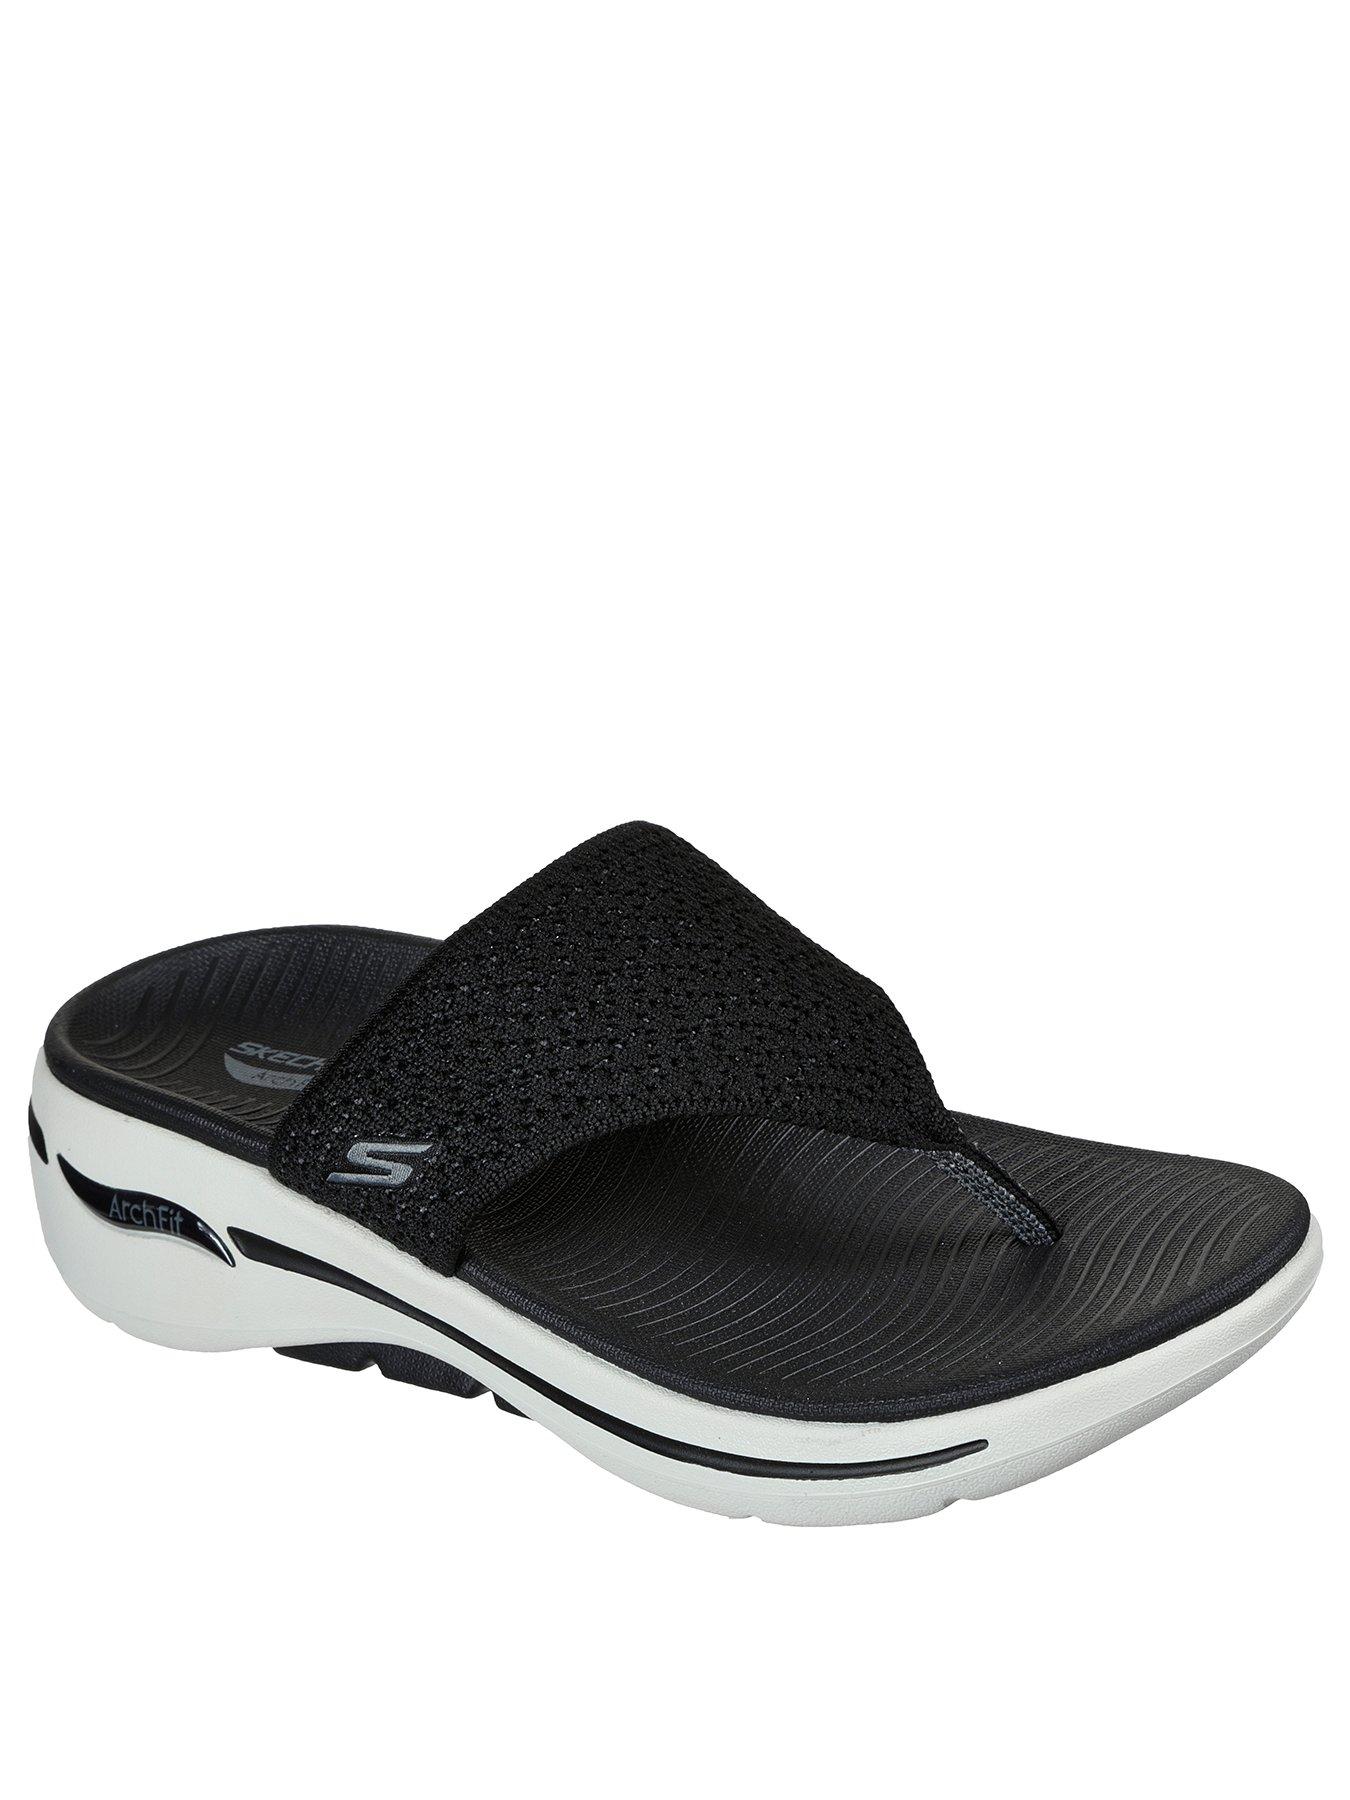 Empleador No autorizado cruzar Skechers Sandals | Skechers Sandals for Women | Very.co.uk